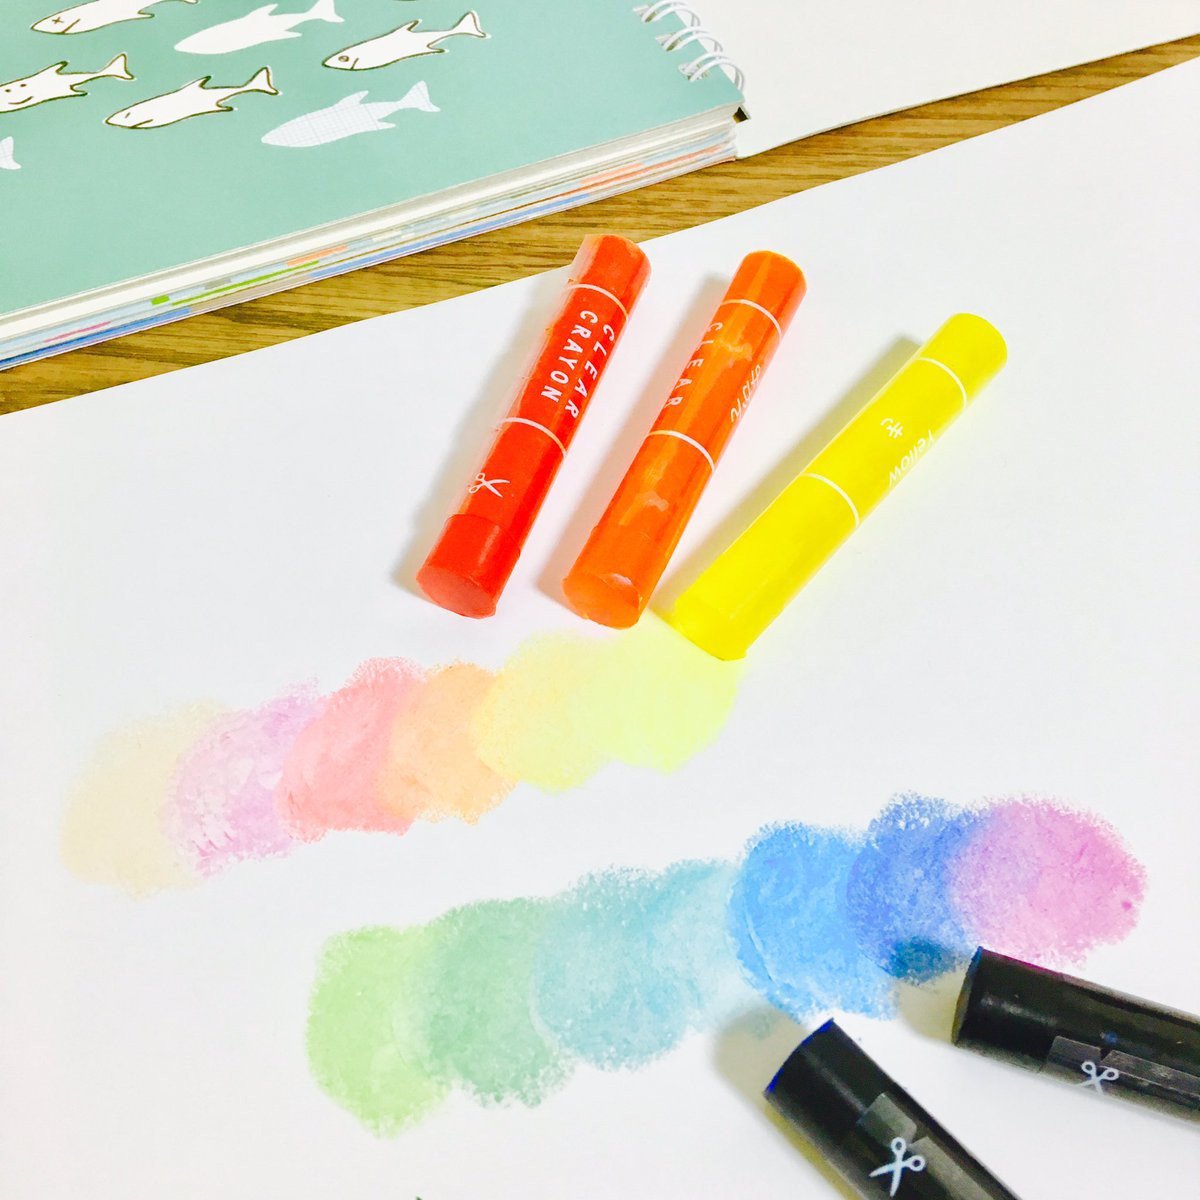 Kokuyo Transparent Crayons